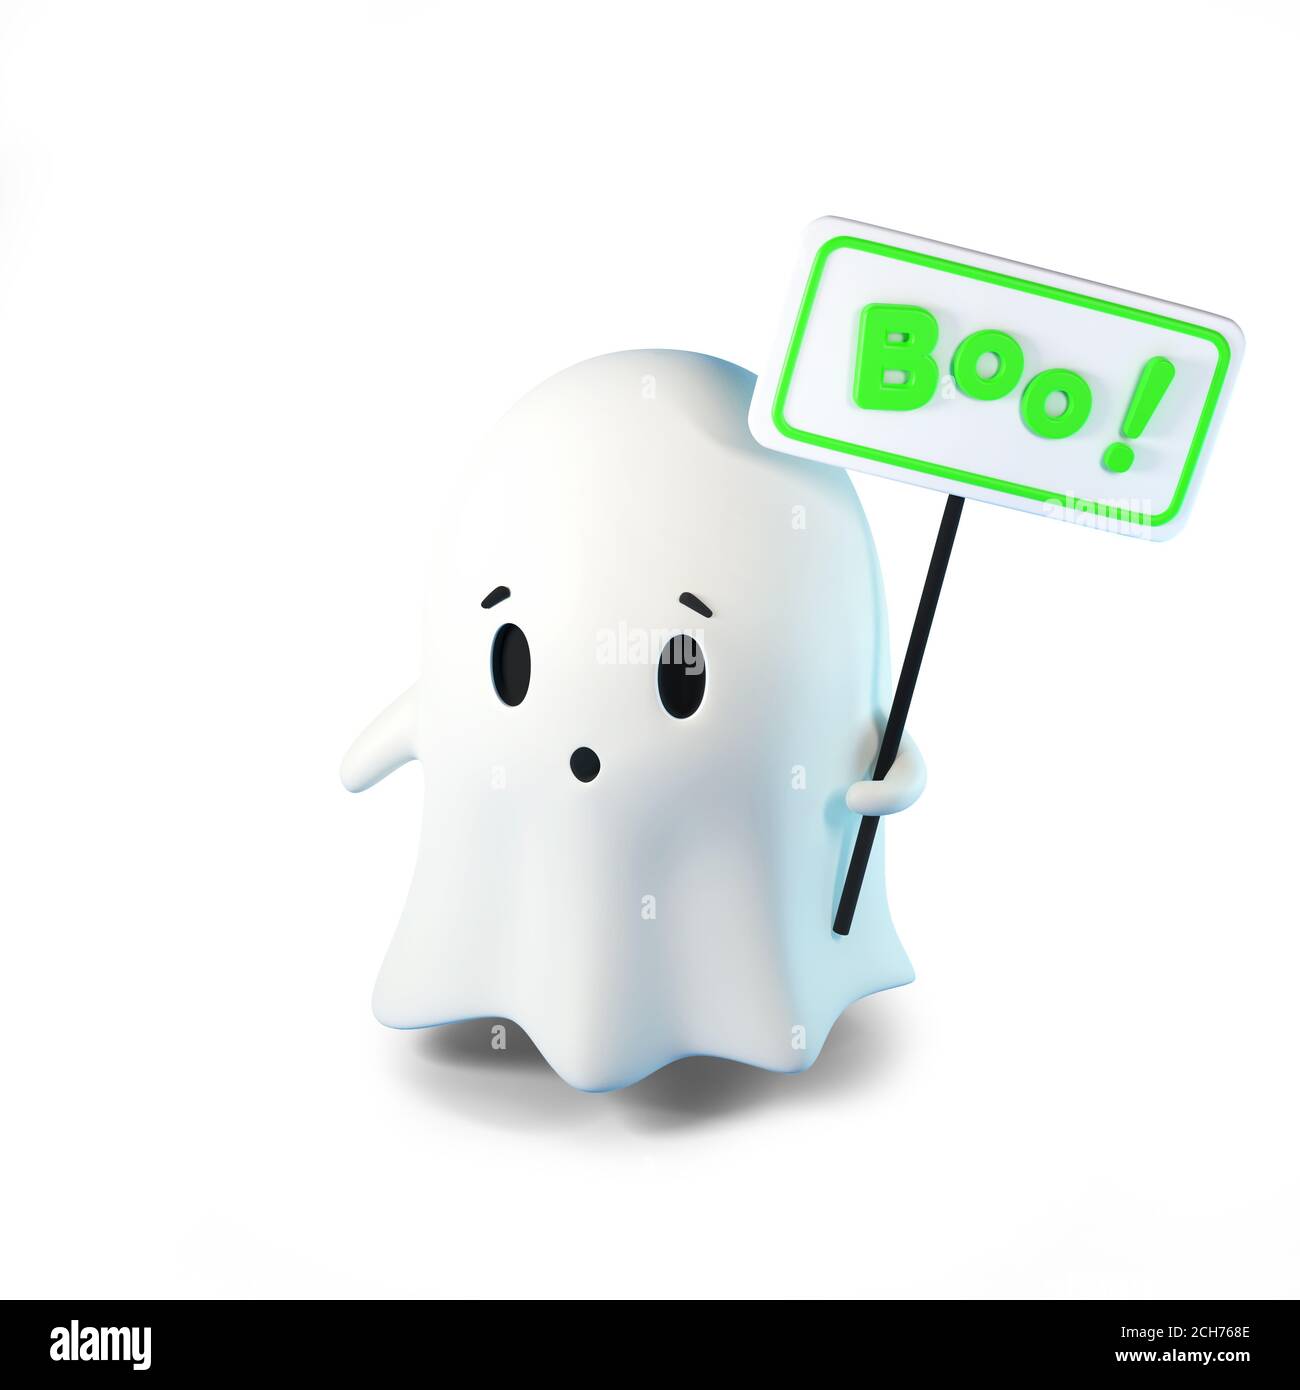 Illustration de rendu 3D de cute friendly Ghost avec une inscription sur le panneau Boo sur fond blanc. Joyeux Halloween Banque D'Images